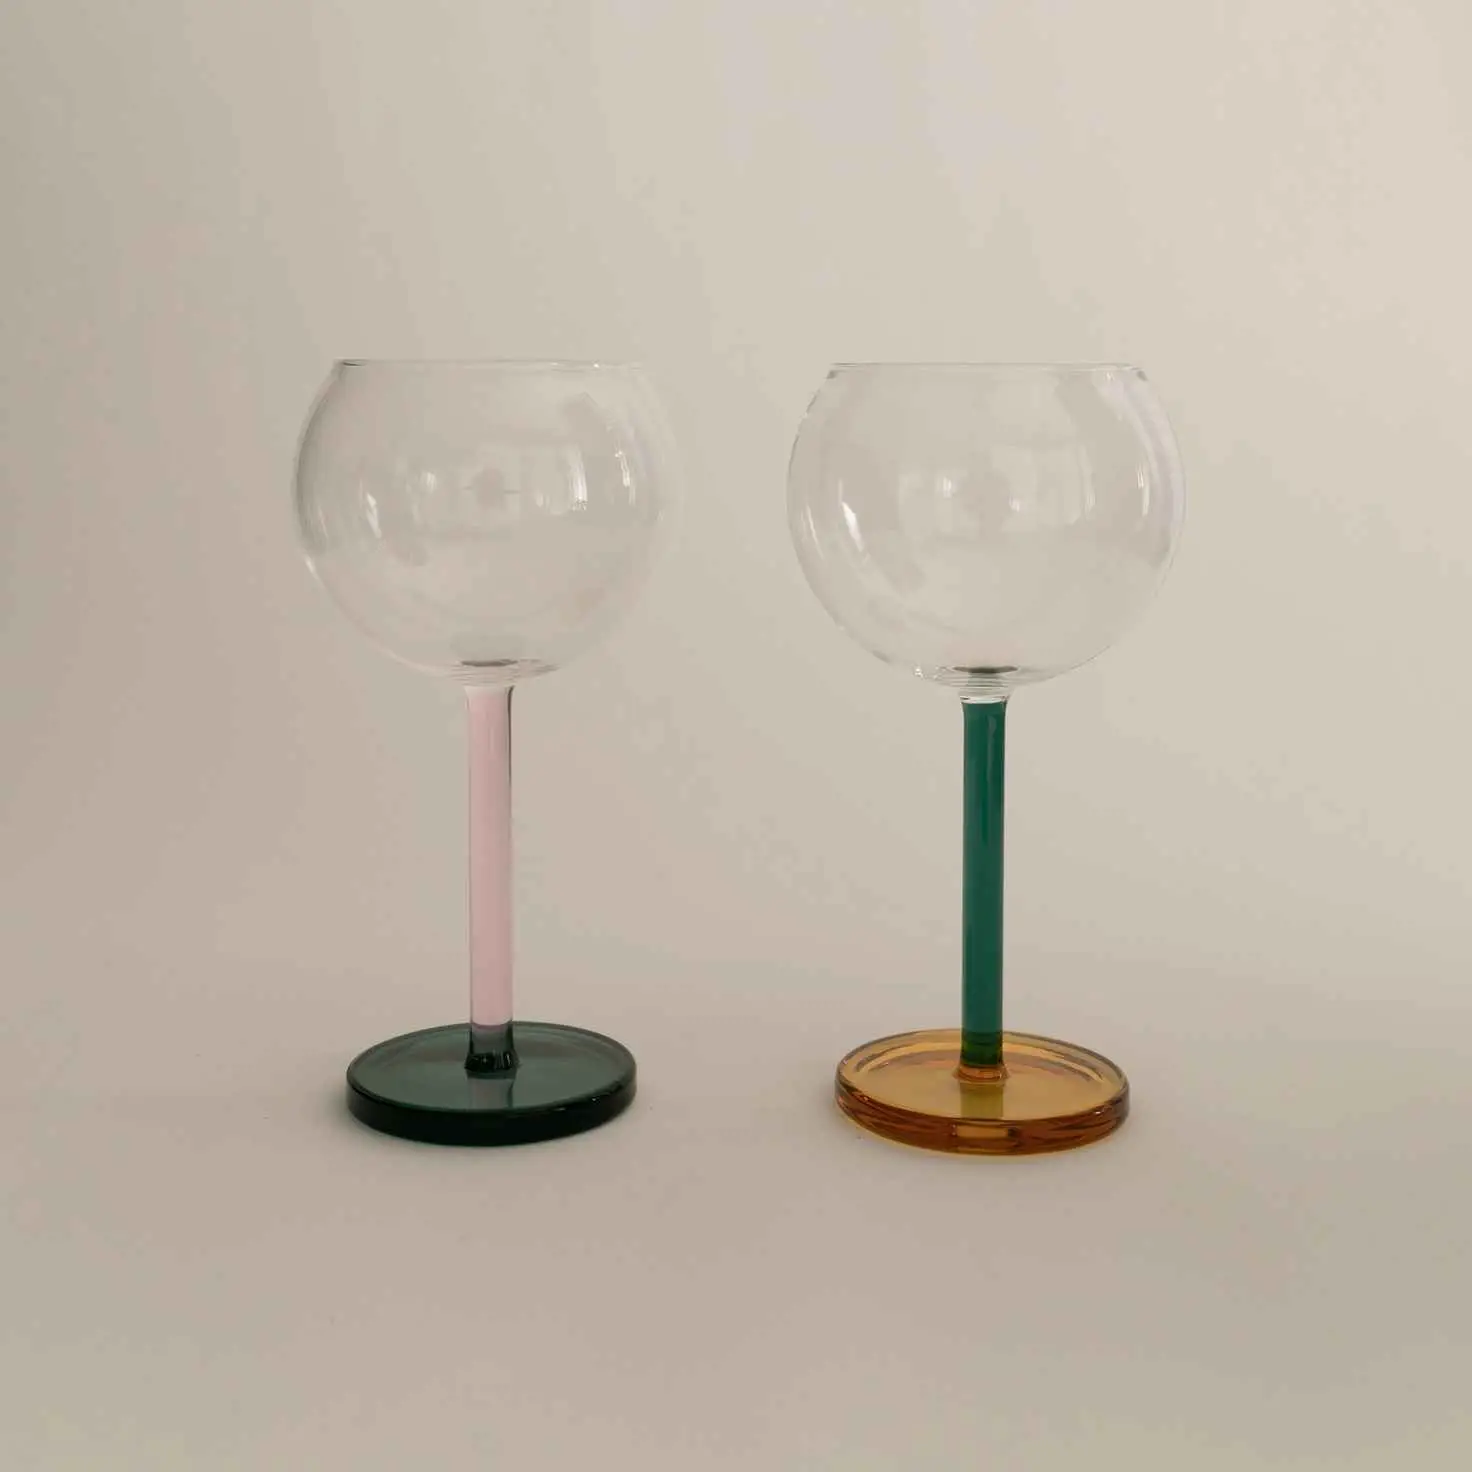 Bilboquet Wine Glasses - Golden Hour Delivery